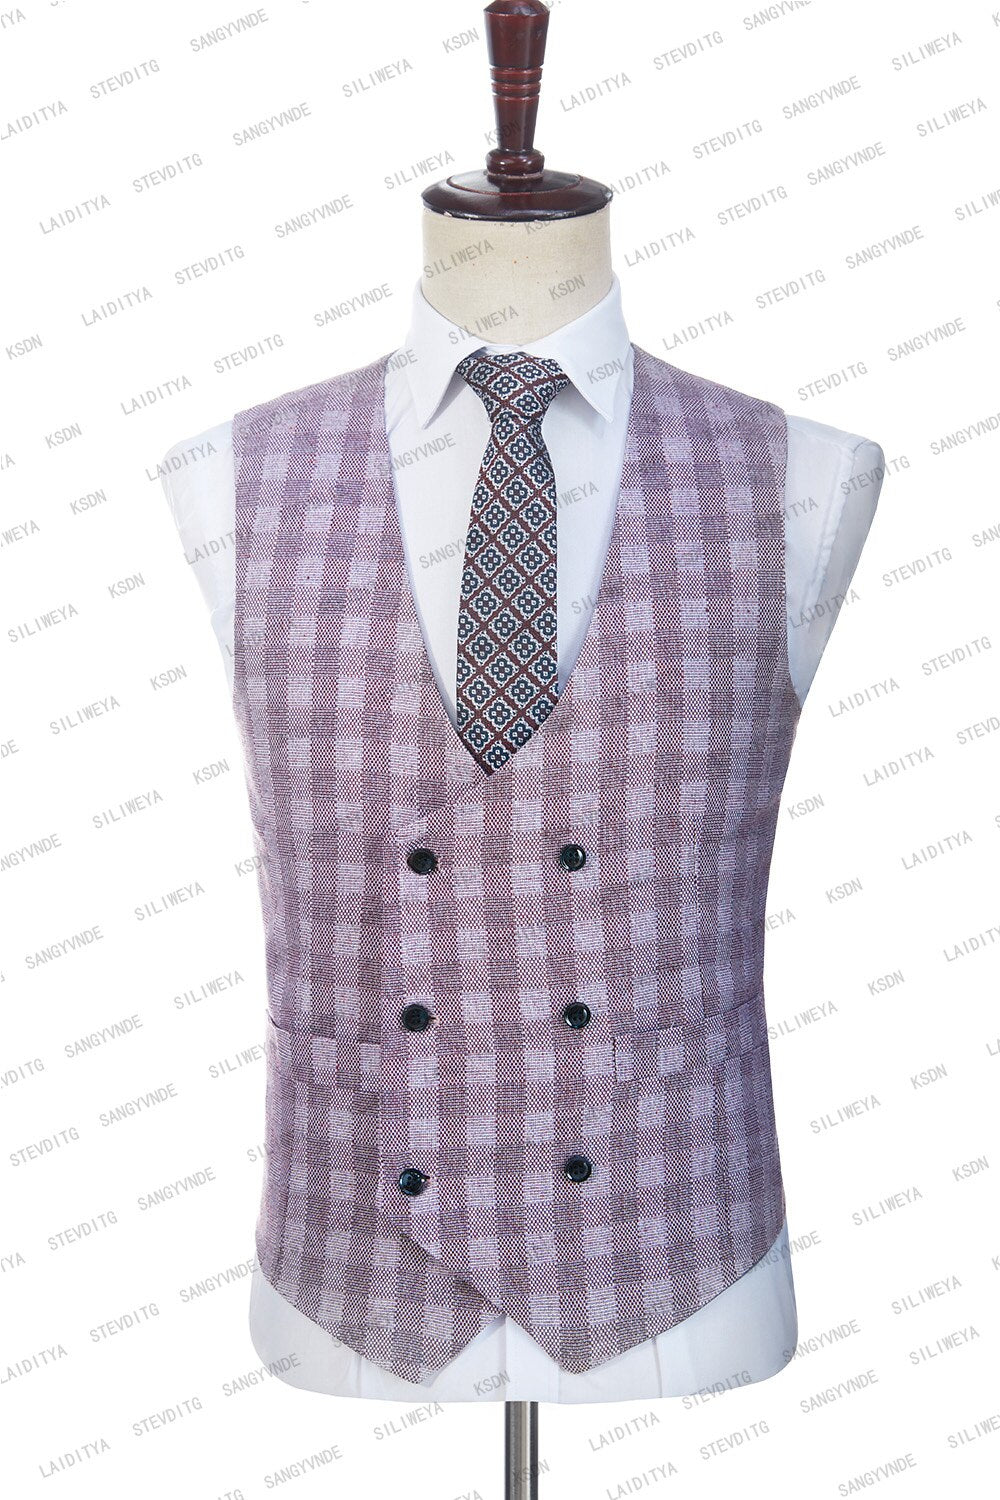 Men Suit 3 Pieces Slim Fit Formal Business Blazer Linen Notched Lapel Light Purple Wedding Groom Tuxedo 2023